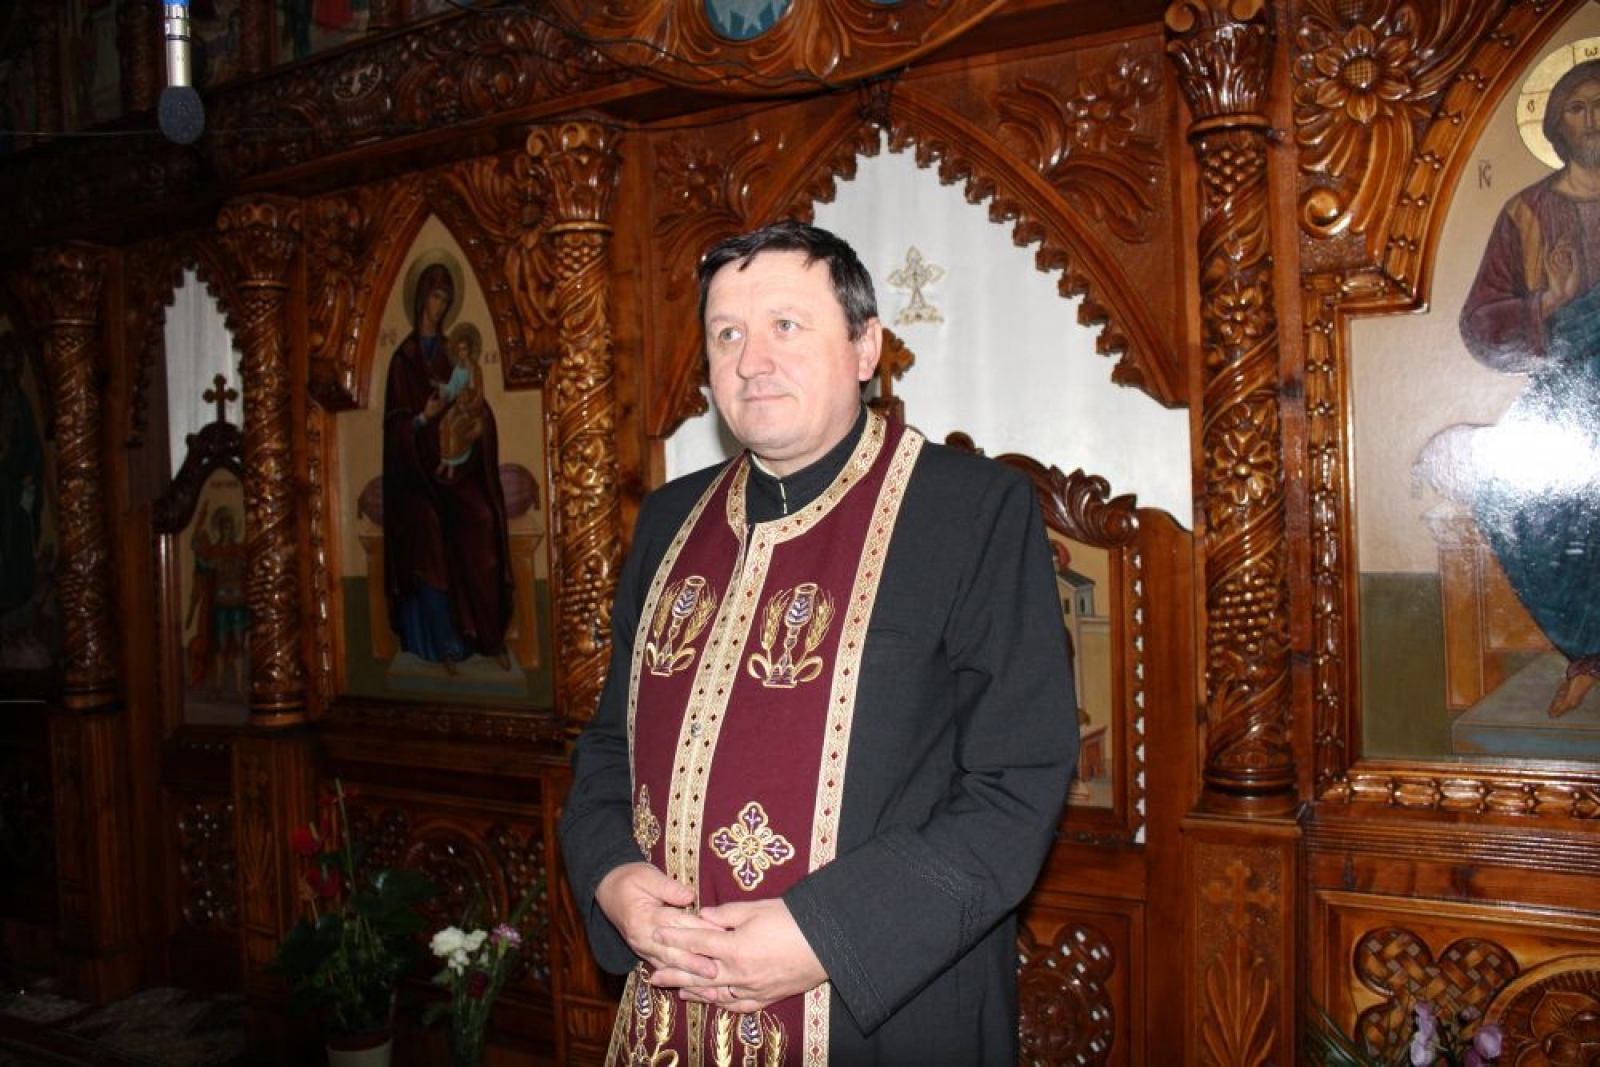 La mulți ani binecuvântați părintelui  Vasile Beni!